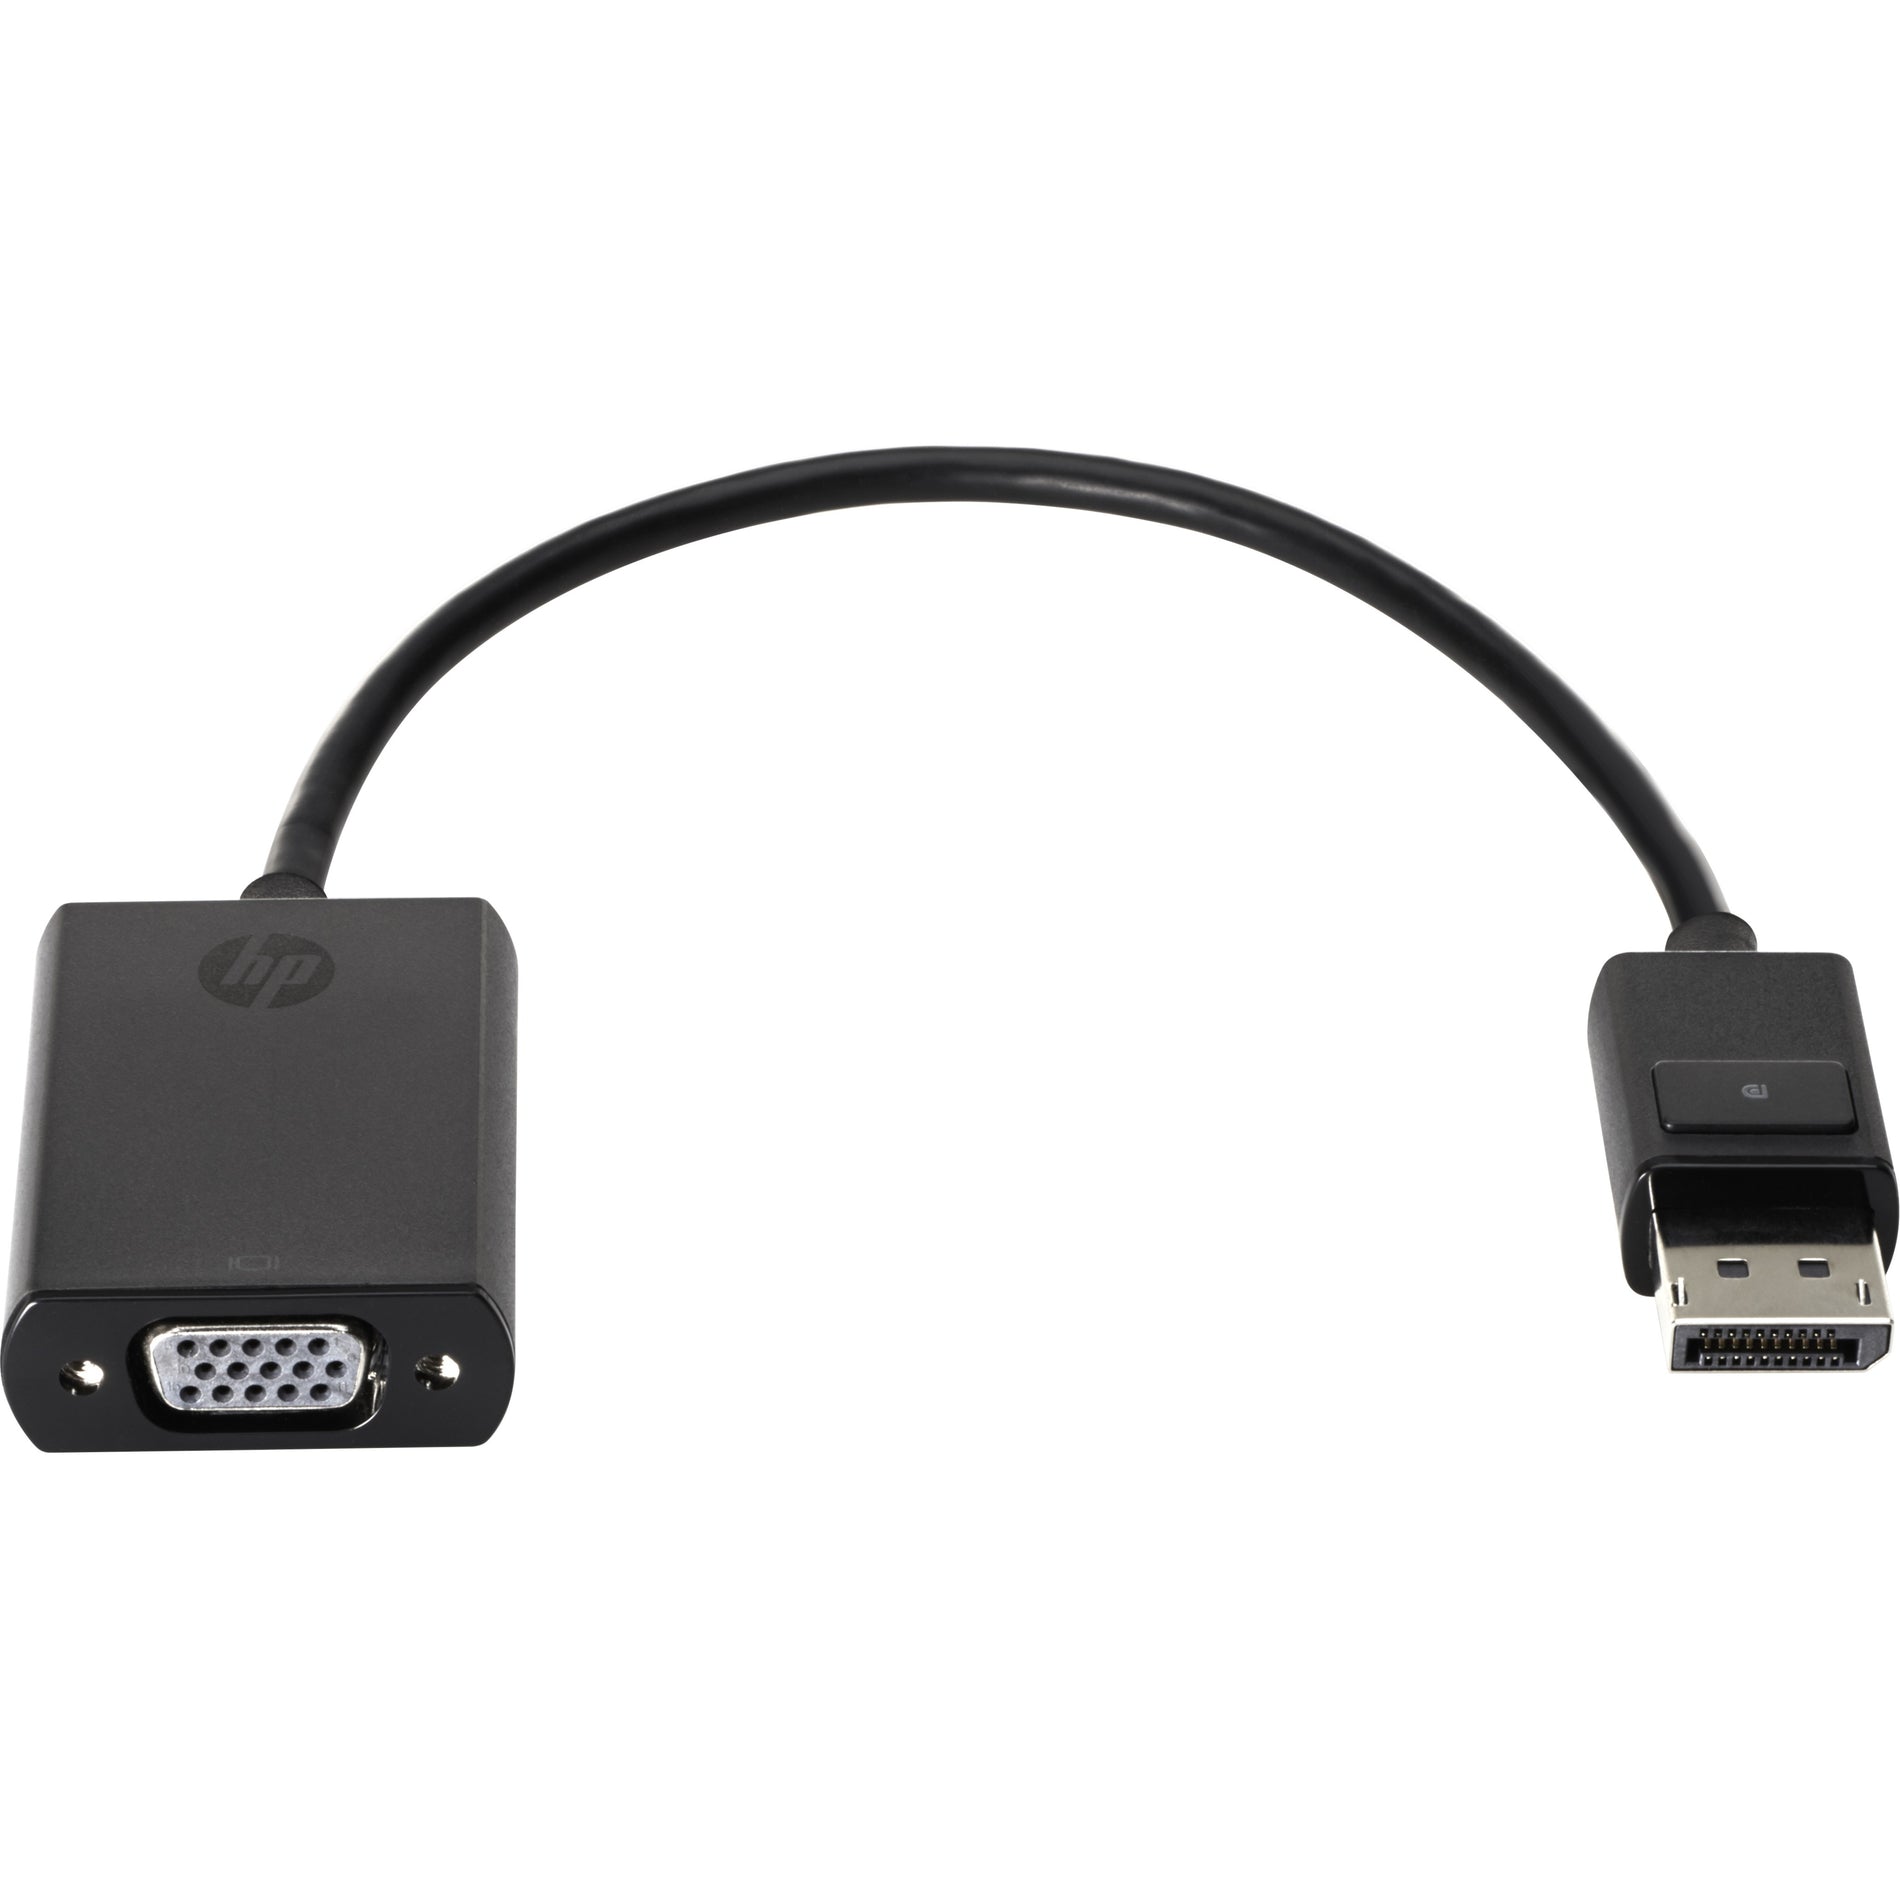 品牌：惠普 惠普 F7W97AA DisplayPort 转 VGA 适配器，连接您的 DisplayPort 设备到 VGA 显示器